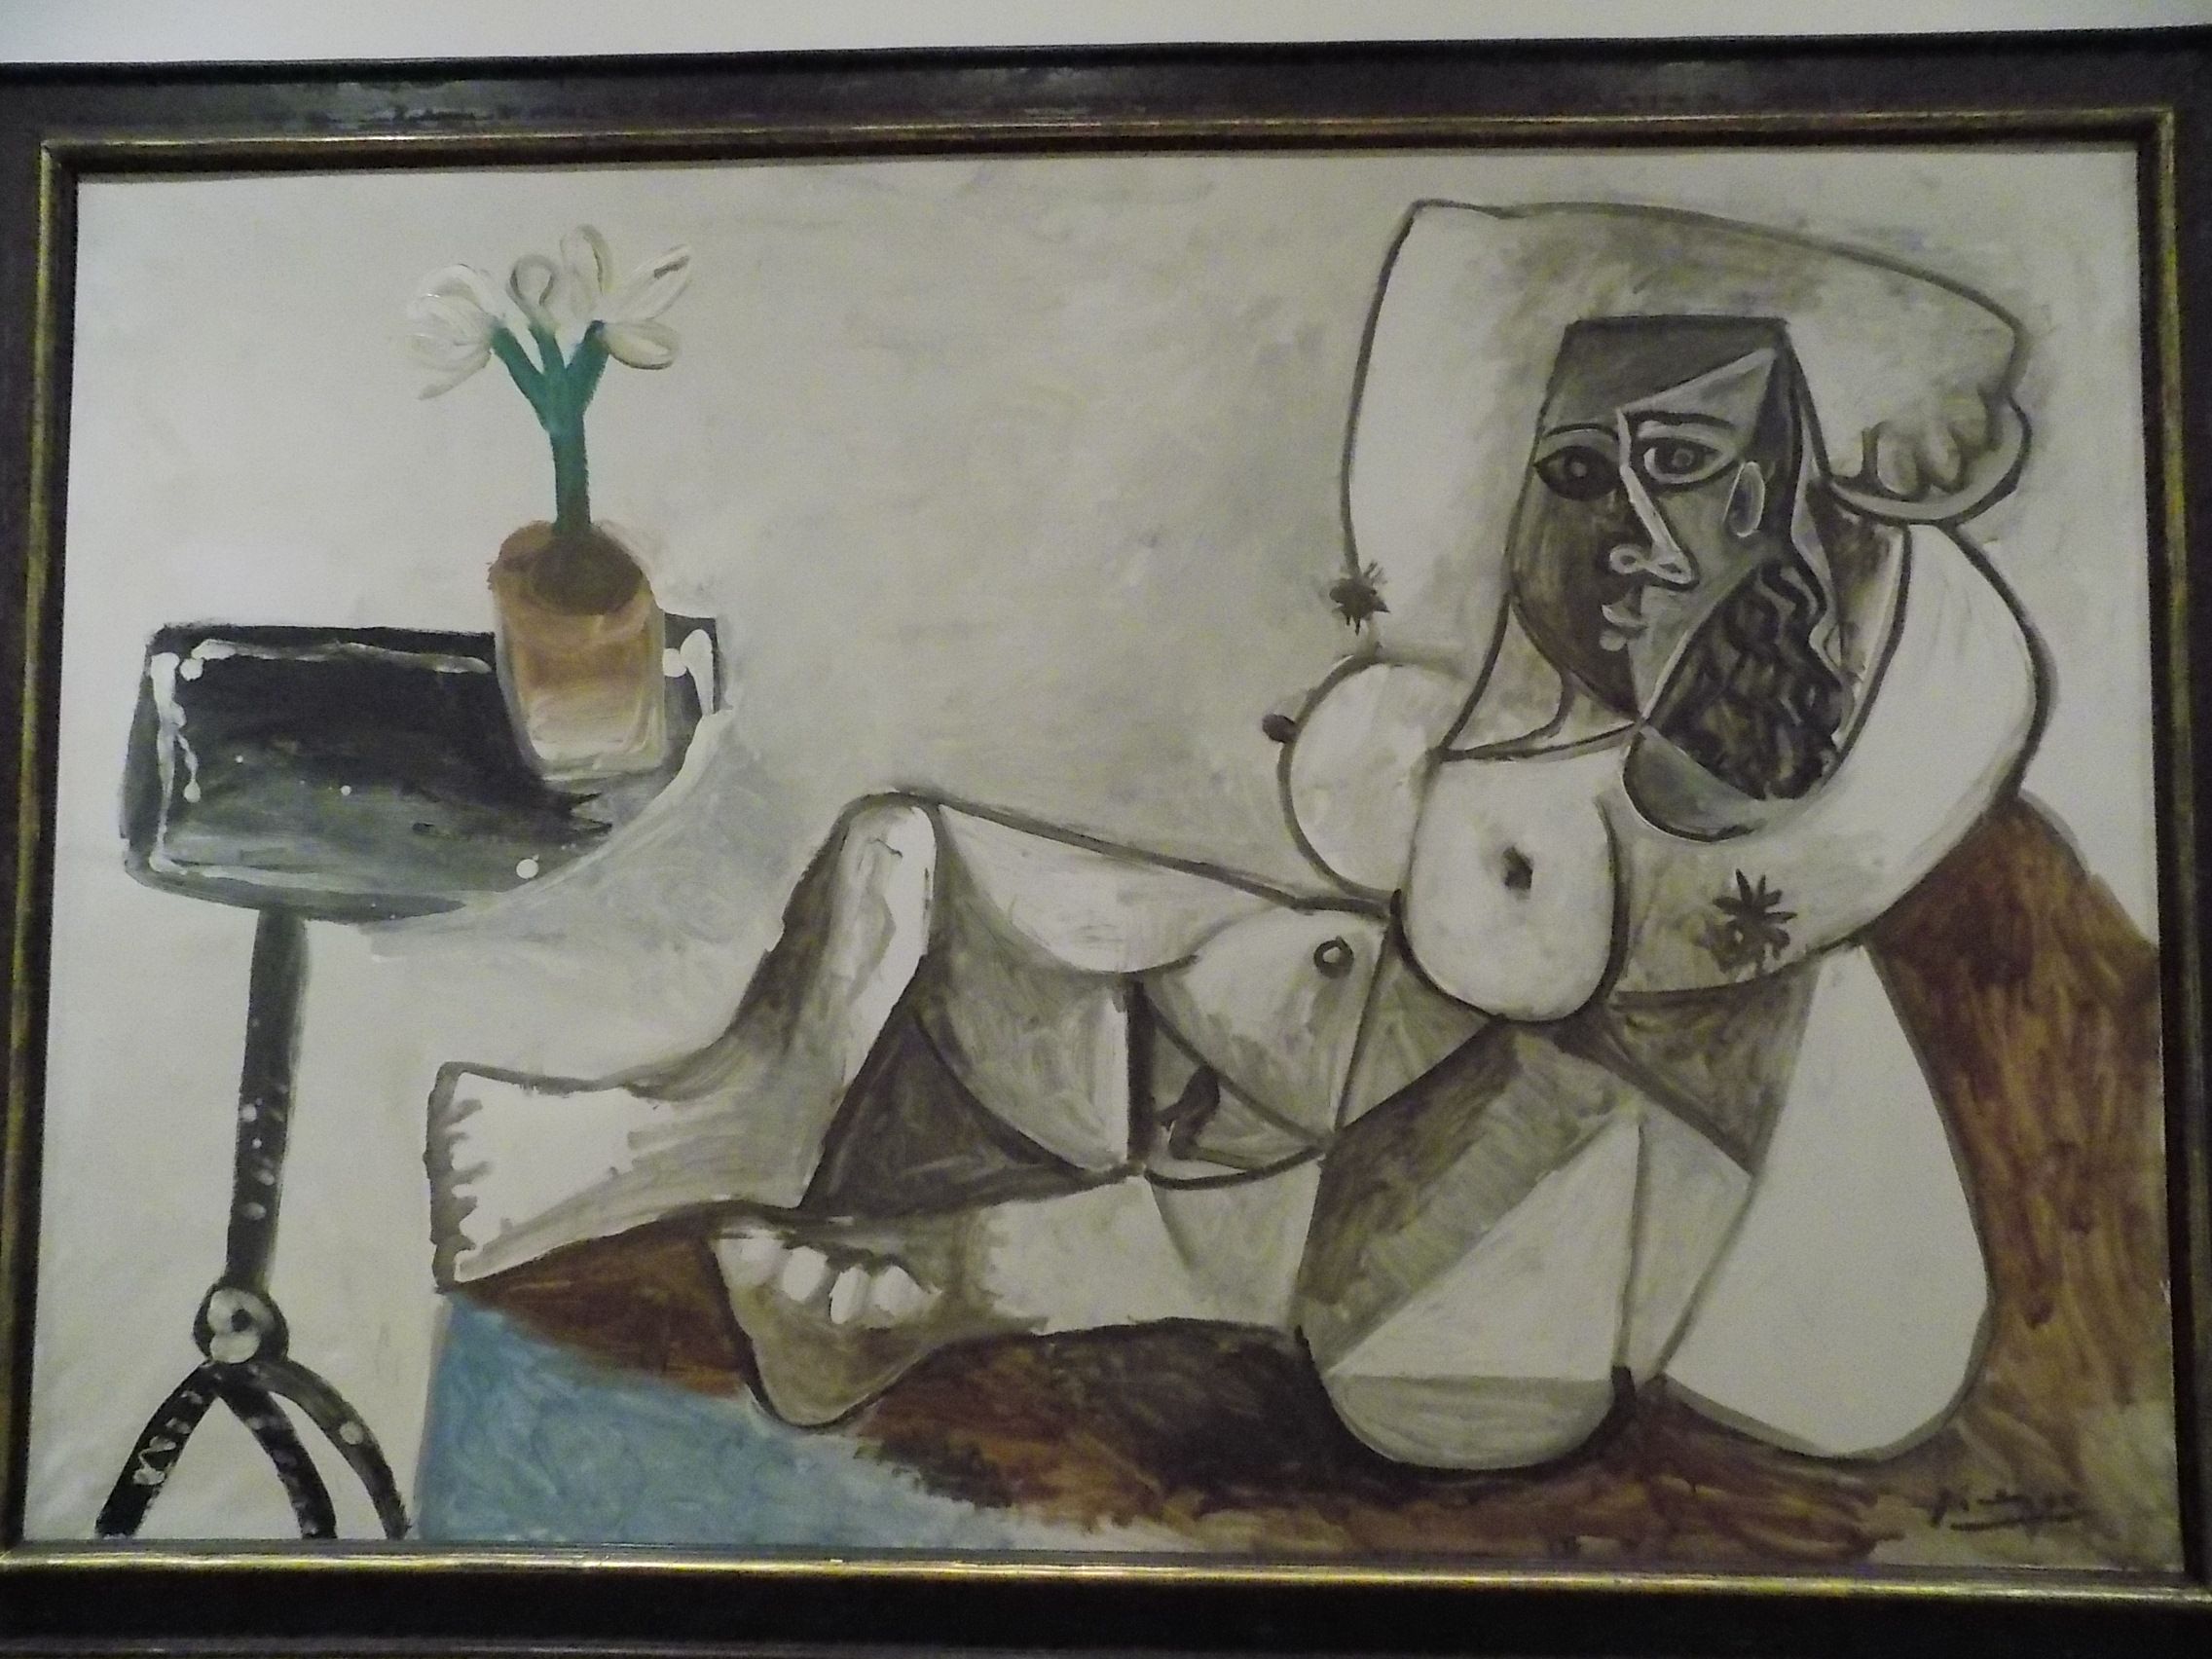 Picasso: "Nu reclinado com buquê"